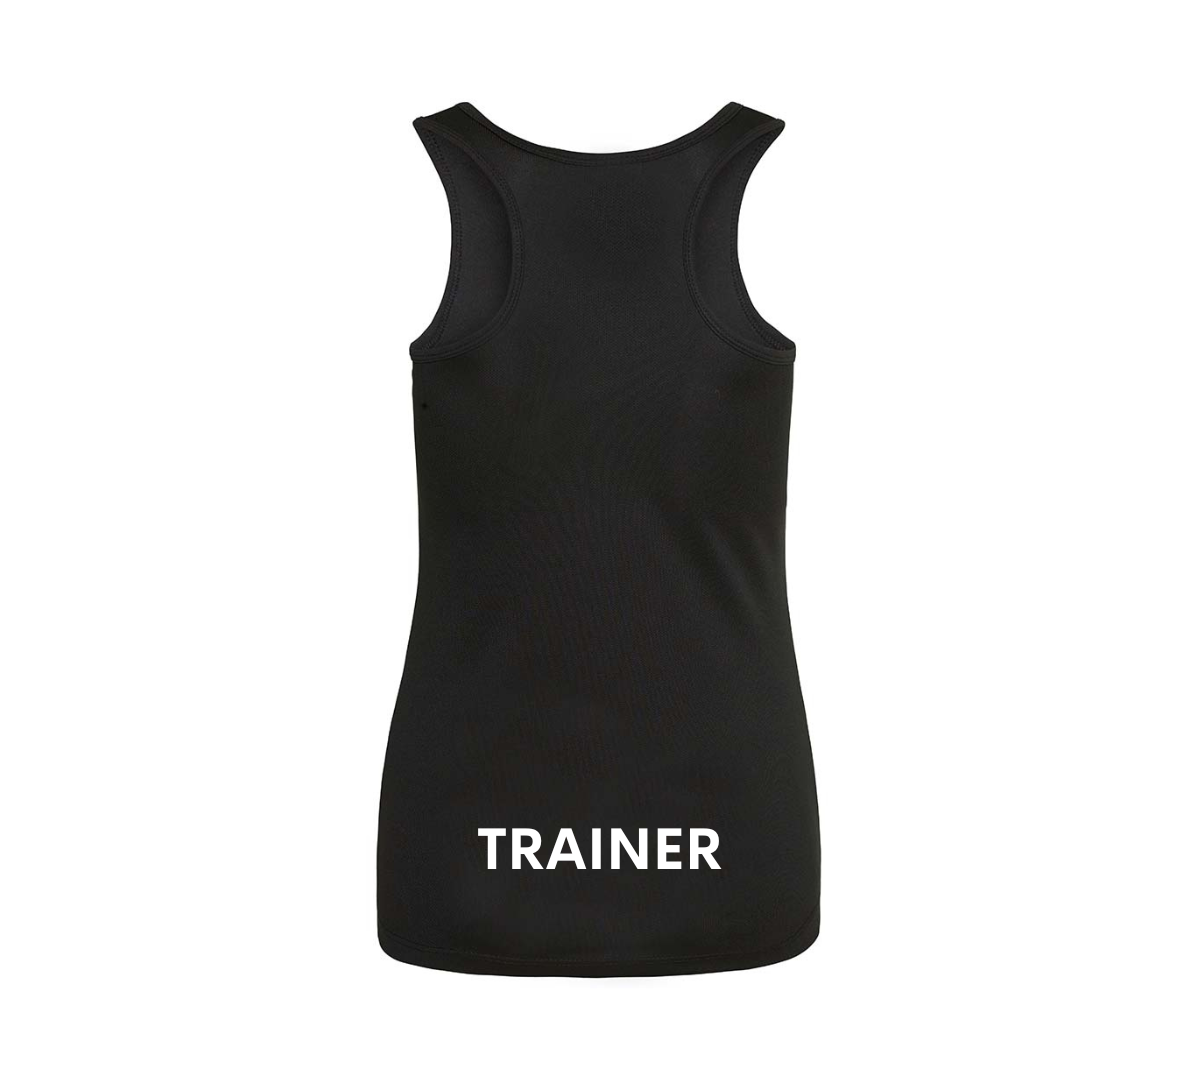 The Shredquarters 'Trainer' Ladies Cool Vest